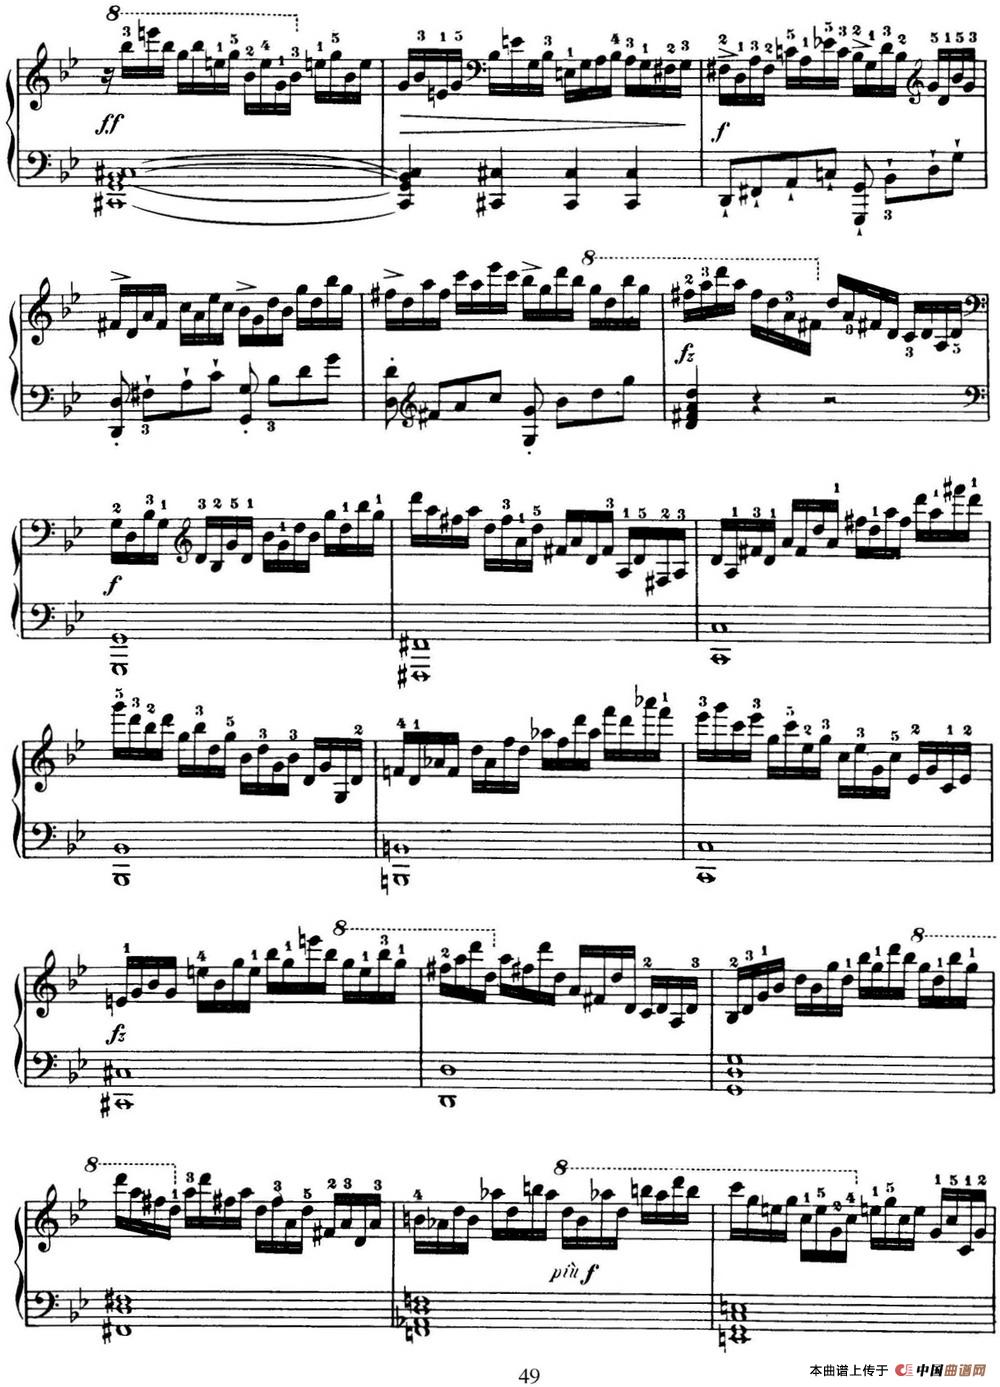 50首车尔尼Op.740钢琴手指灵巧技术练习曲（NO.14）(1)_C740_页面_049.jpg